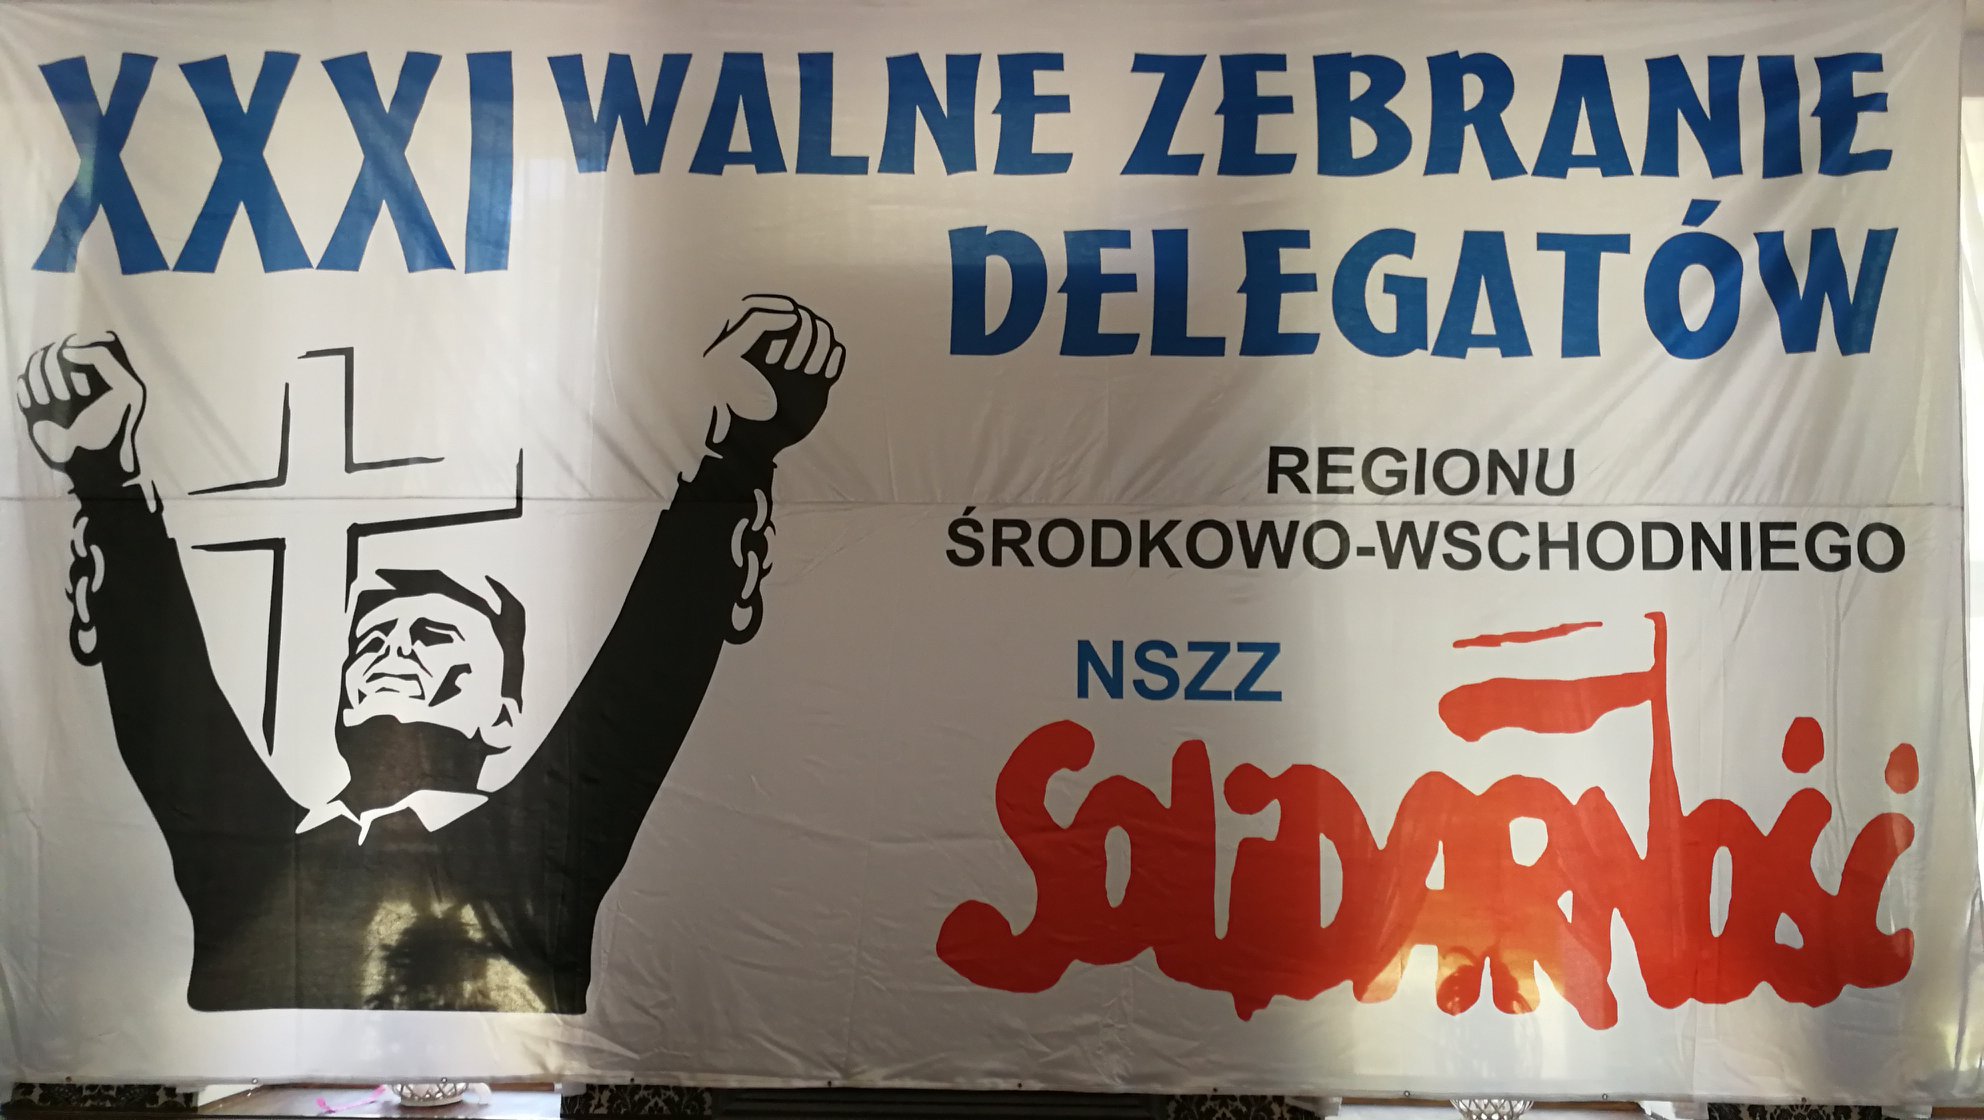 XXXI Walny Zjazd Delegatów Regionu NSZZ Solidarność w sprawie dywidendy.